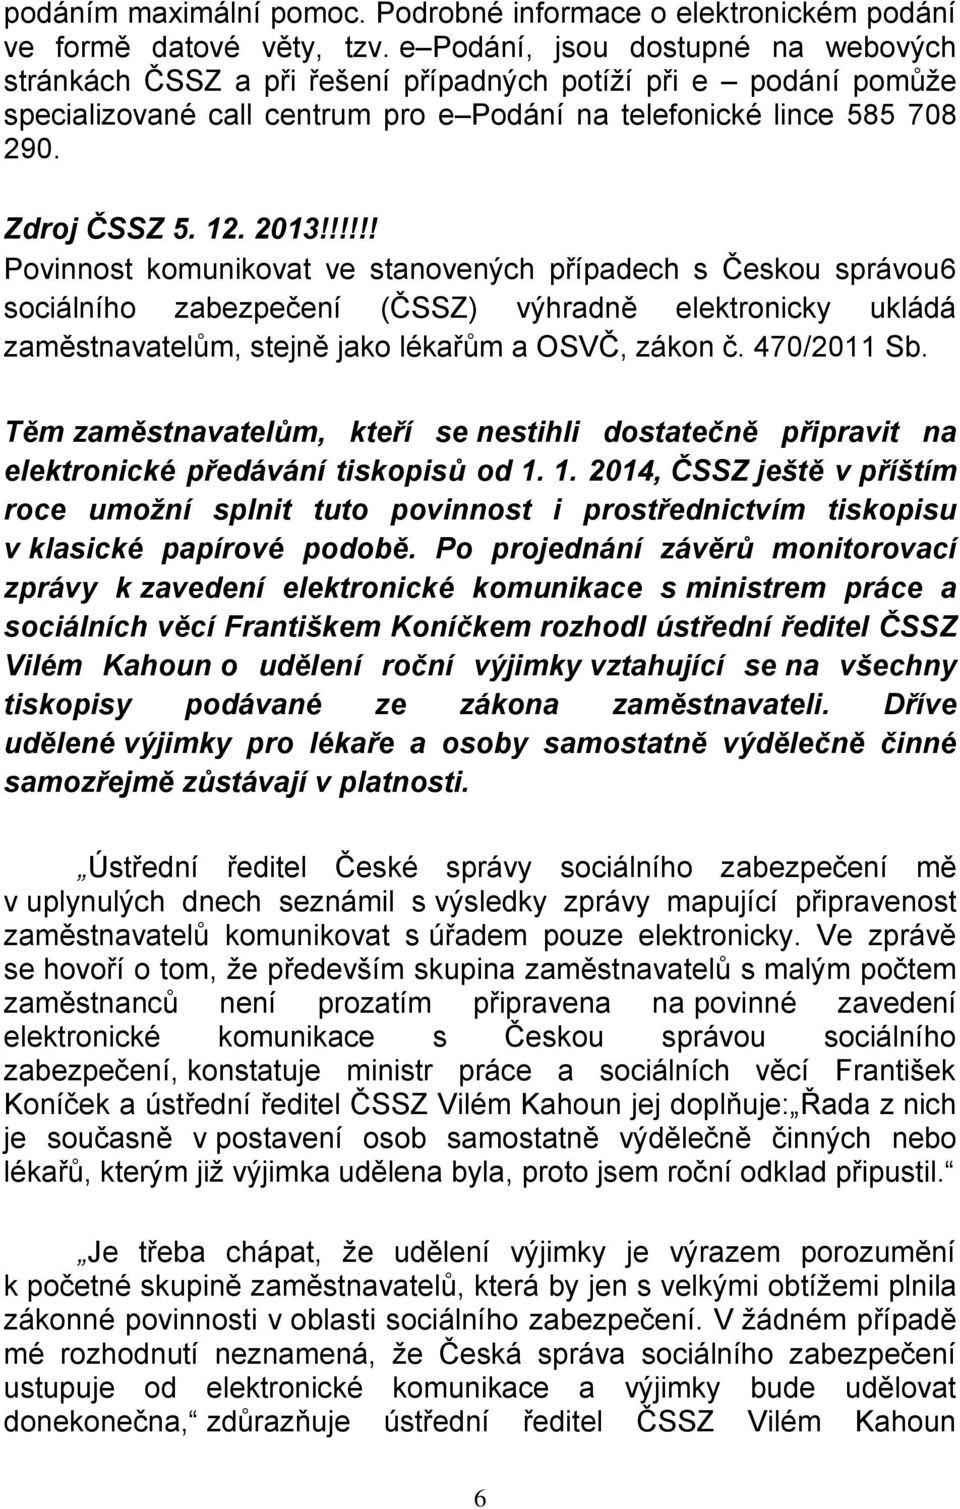 !!!!! Povinnost komunikovat ve stanovených případech s Českou správou6 sociálního zabezpečení (ČSSZ) výhradně elektronicky ukládá zaměstnavatelům, stejně jako lékařům a OSVČ, zákon č. 470/2011 Sb.